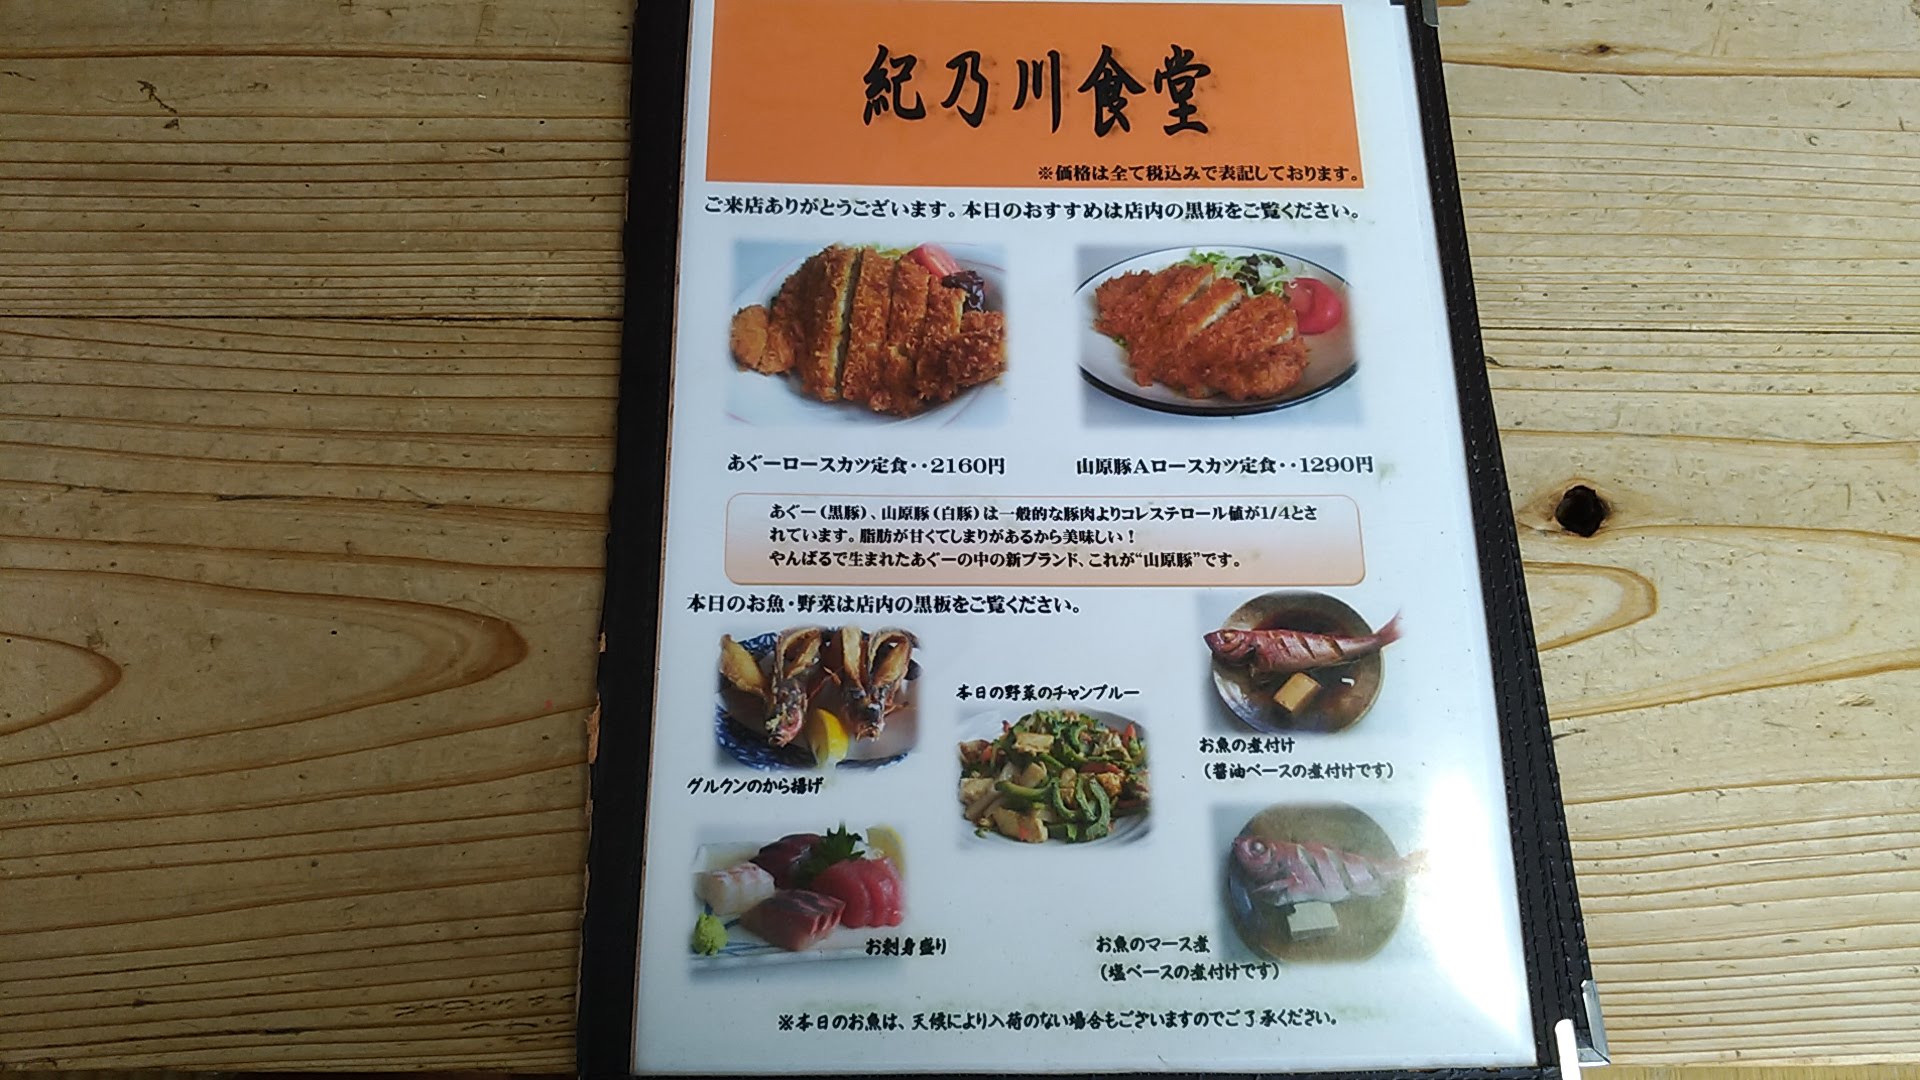 Kinokawa's menu